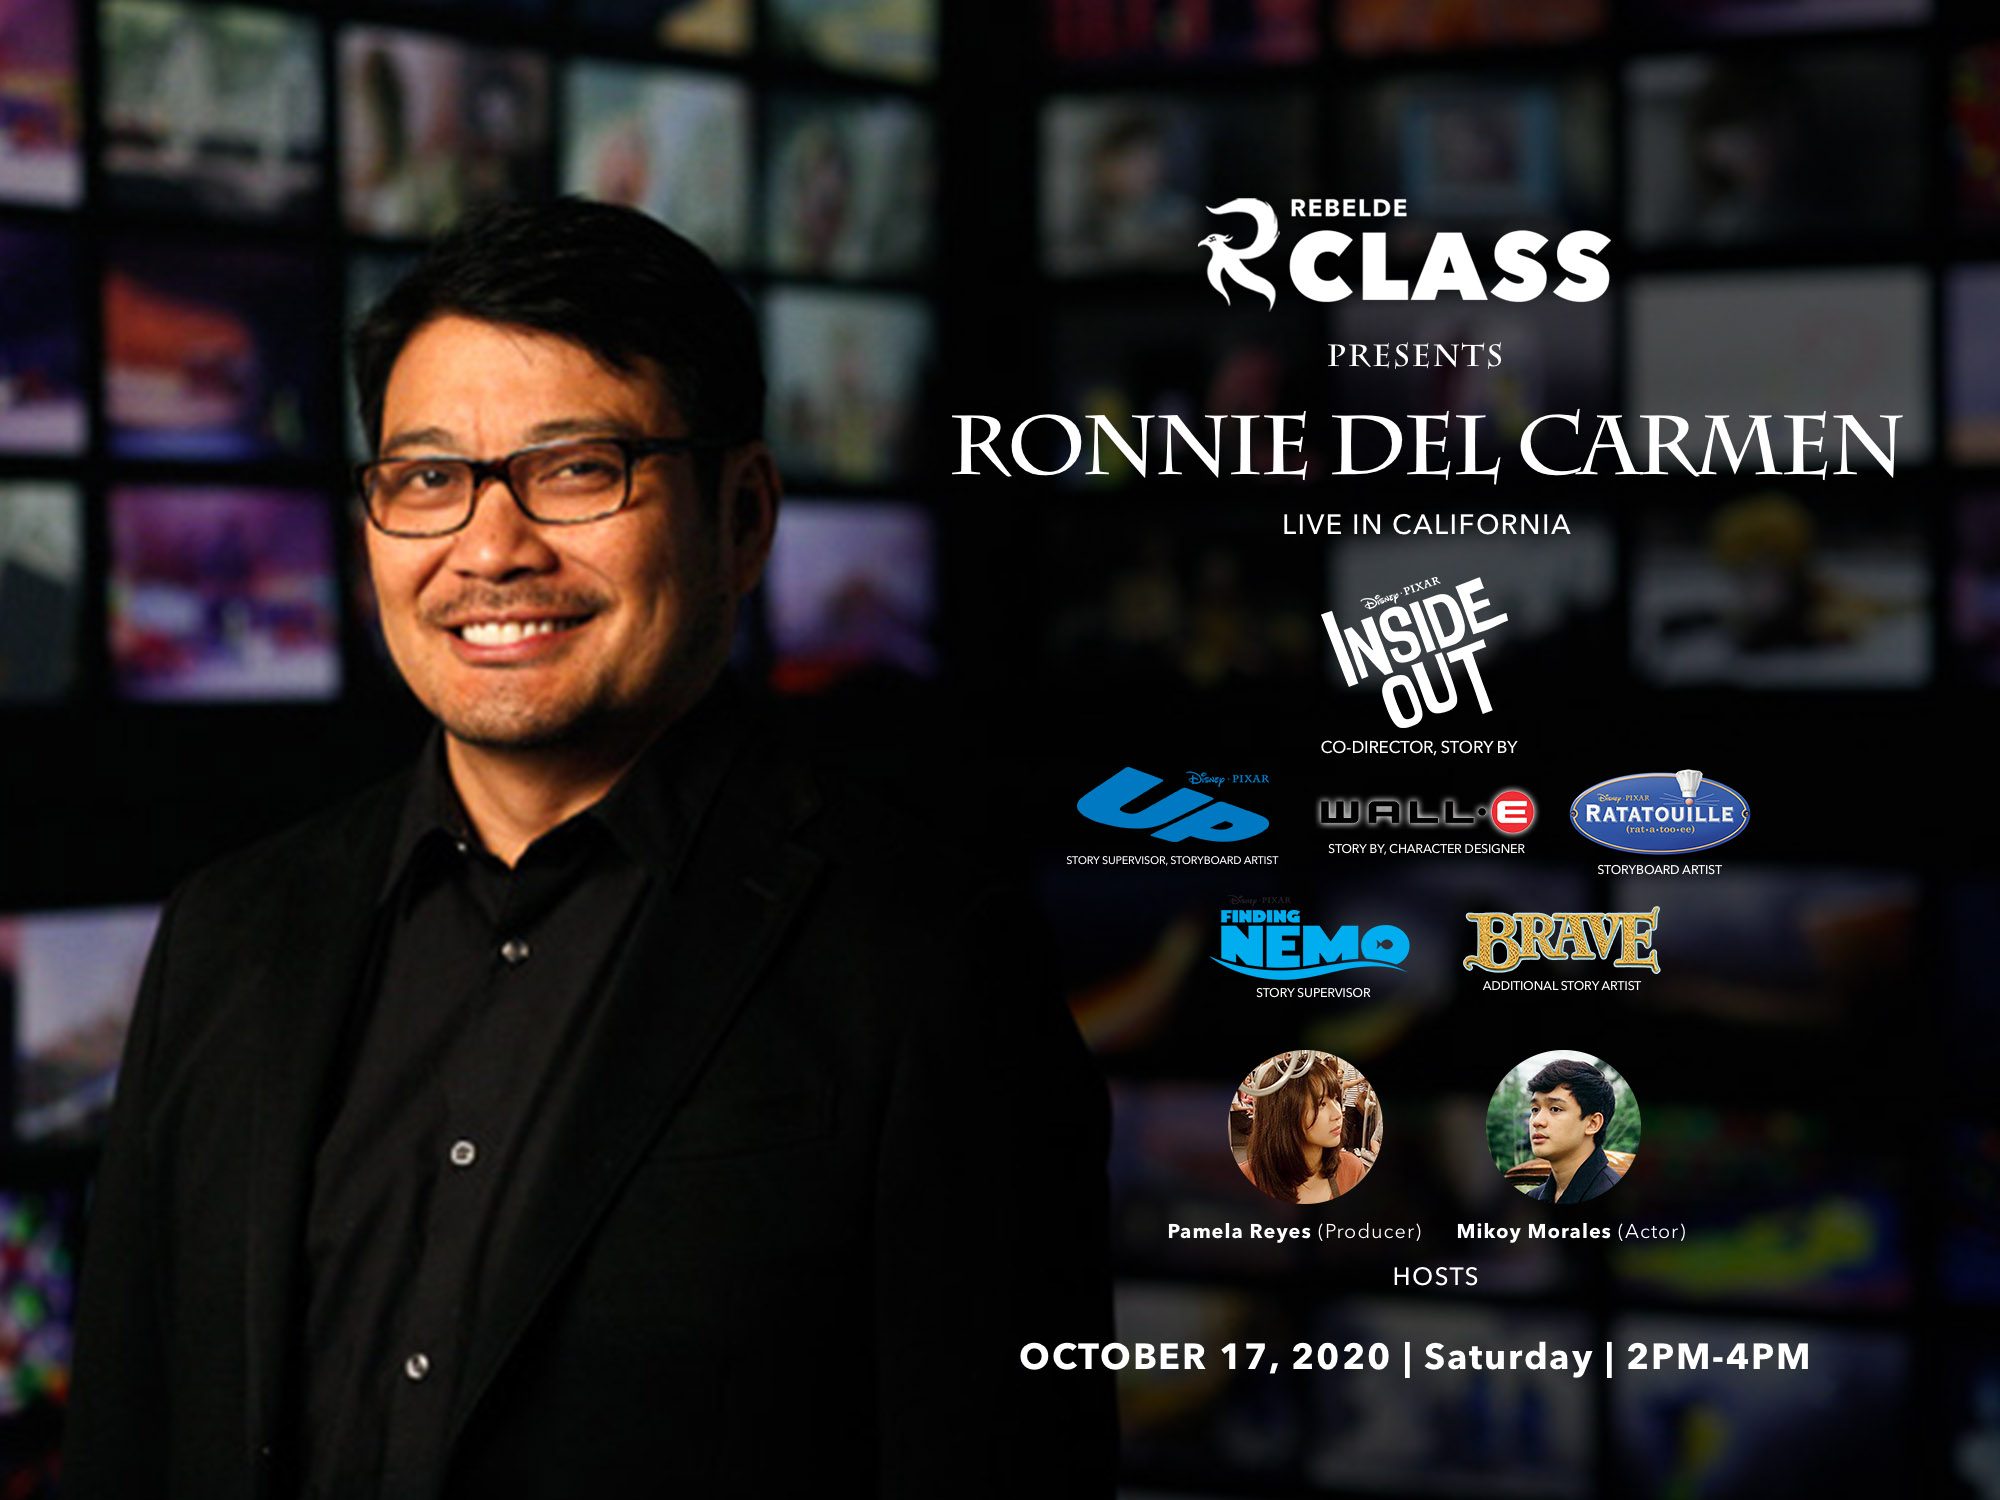 Filipino Pixar director to helm Rebelde online filmmaking class